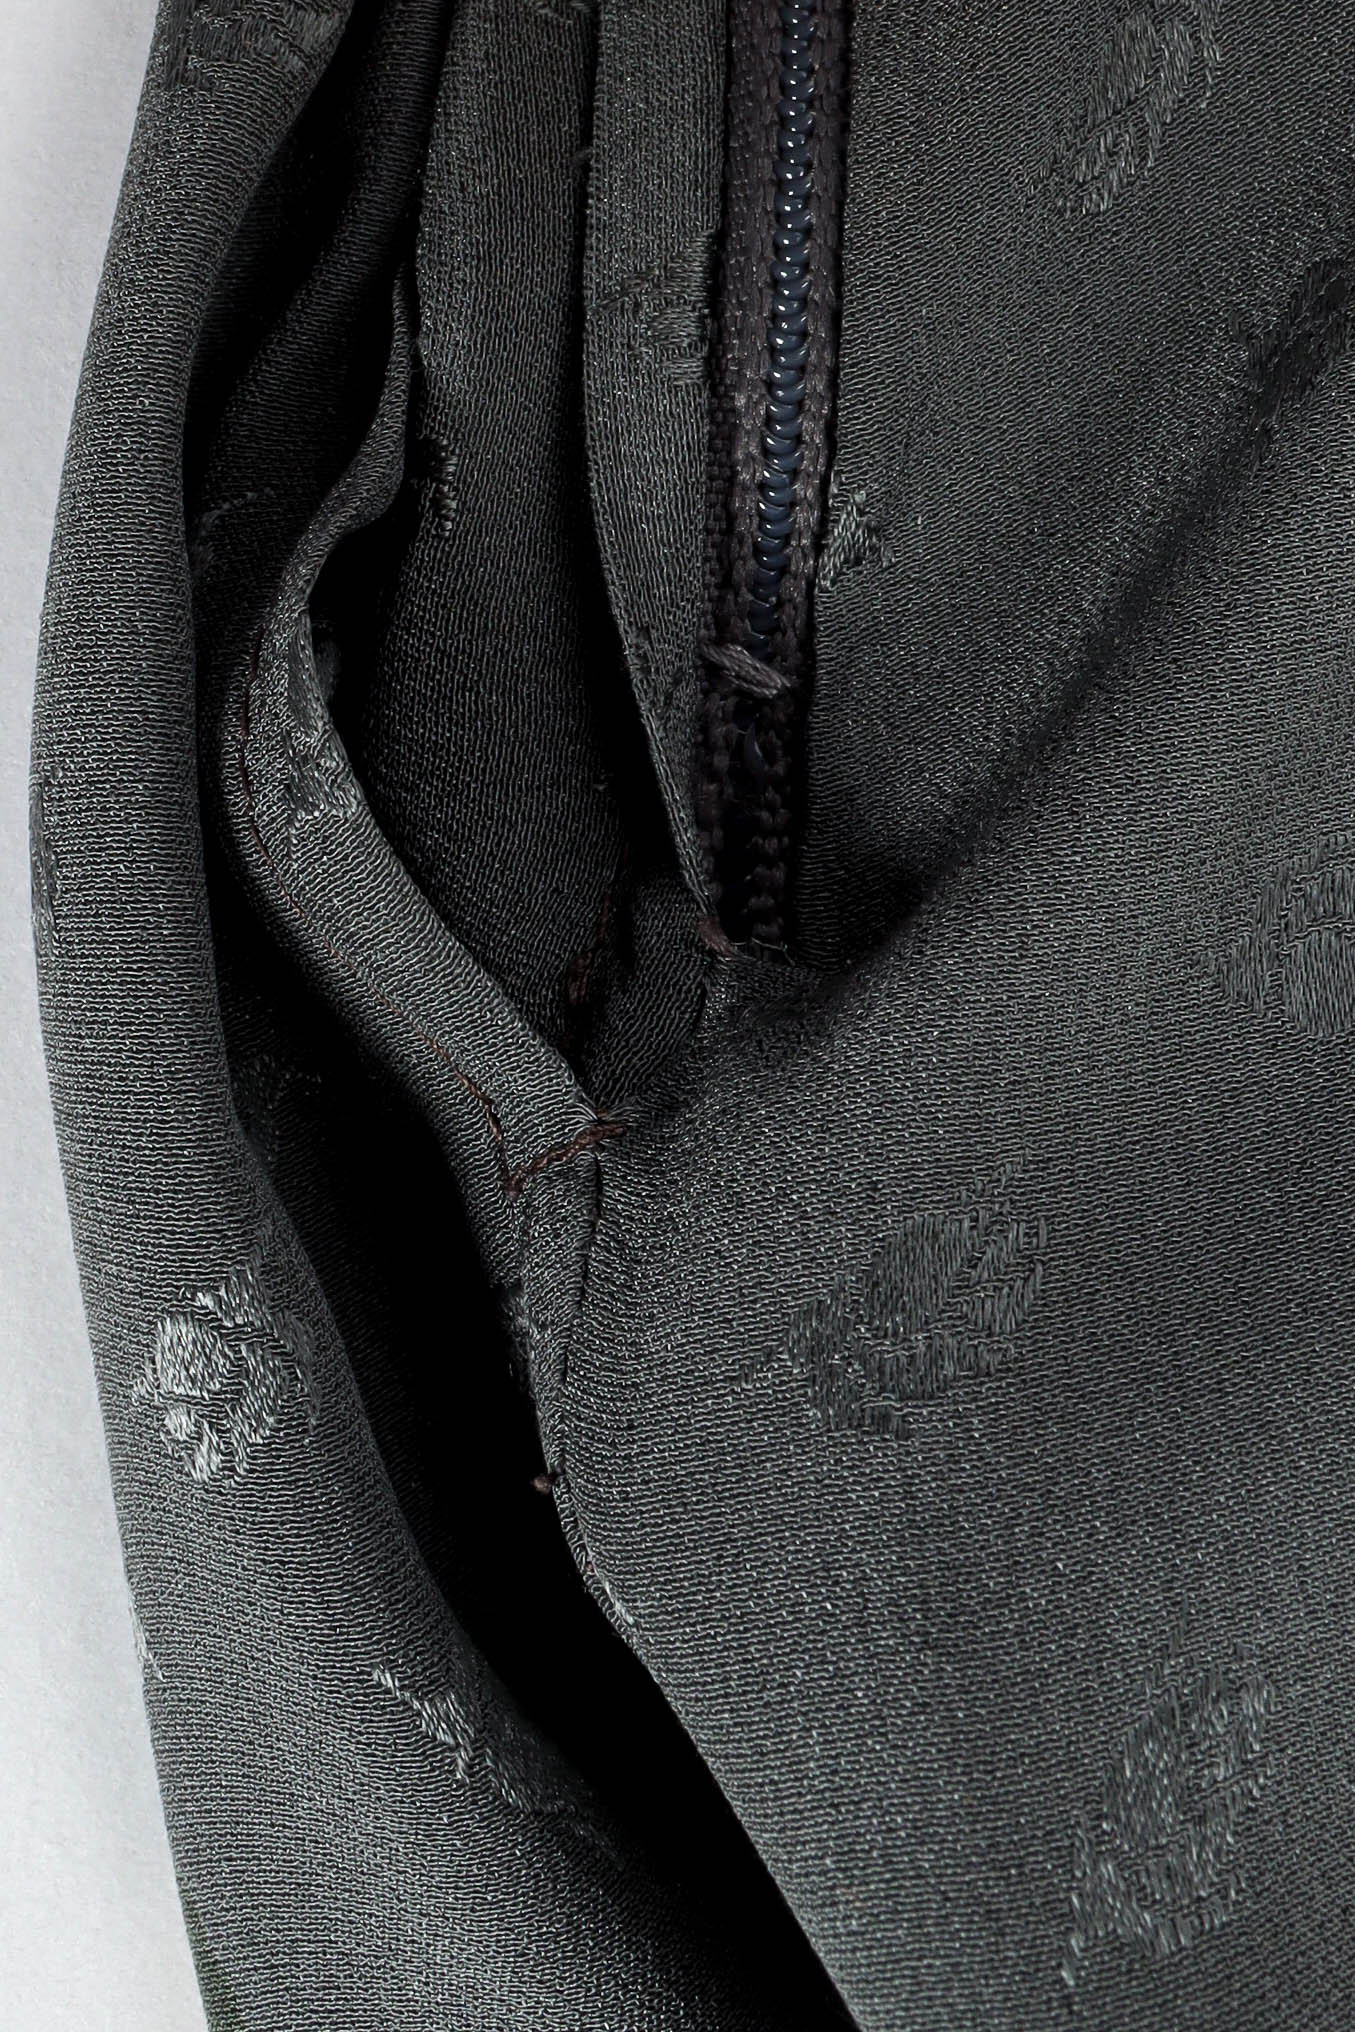 Vintage Emanuel Ungaro Ombré Rose Print Skirt  reinforced zipper stitches detail @ Recess LA